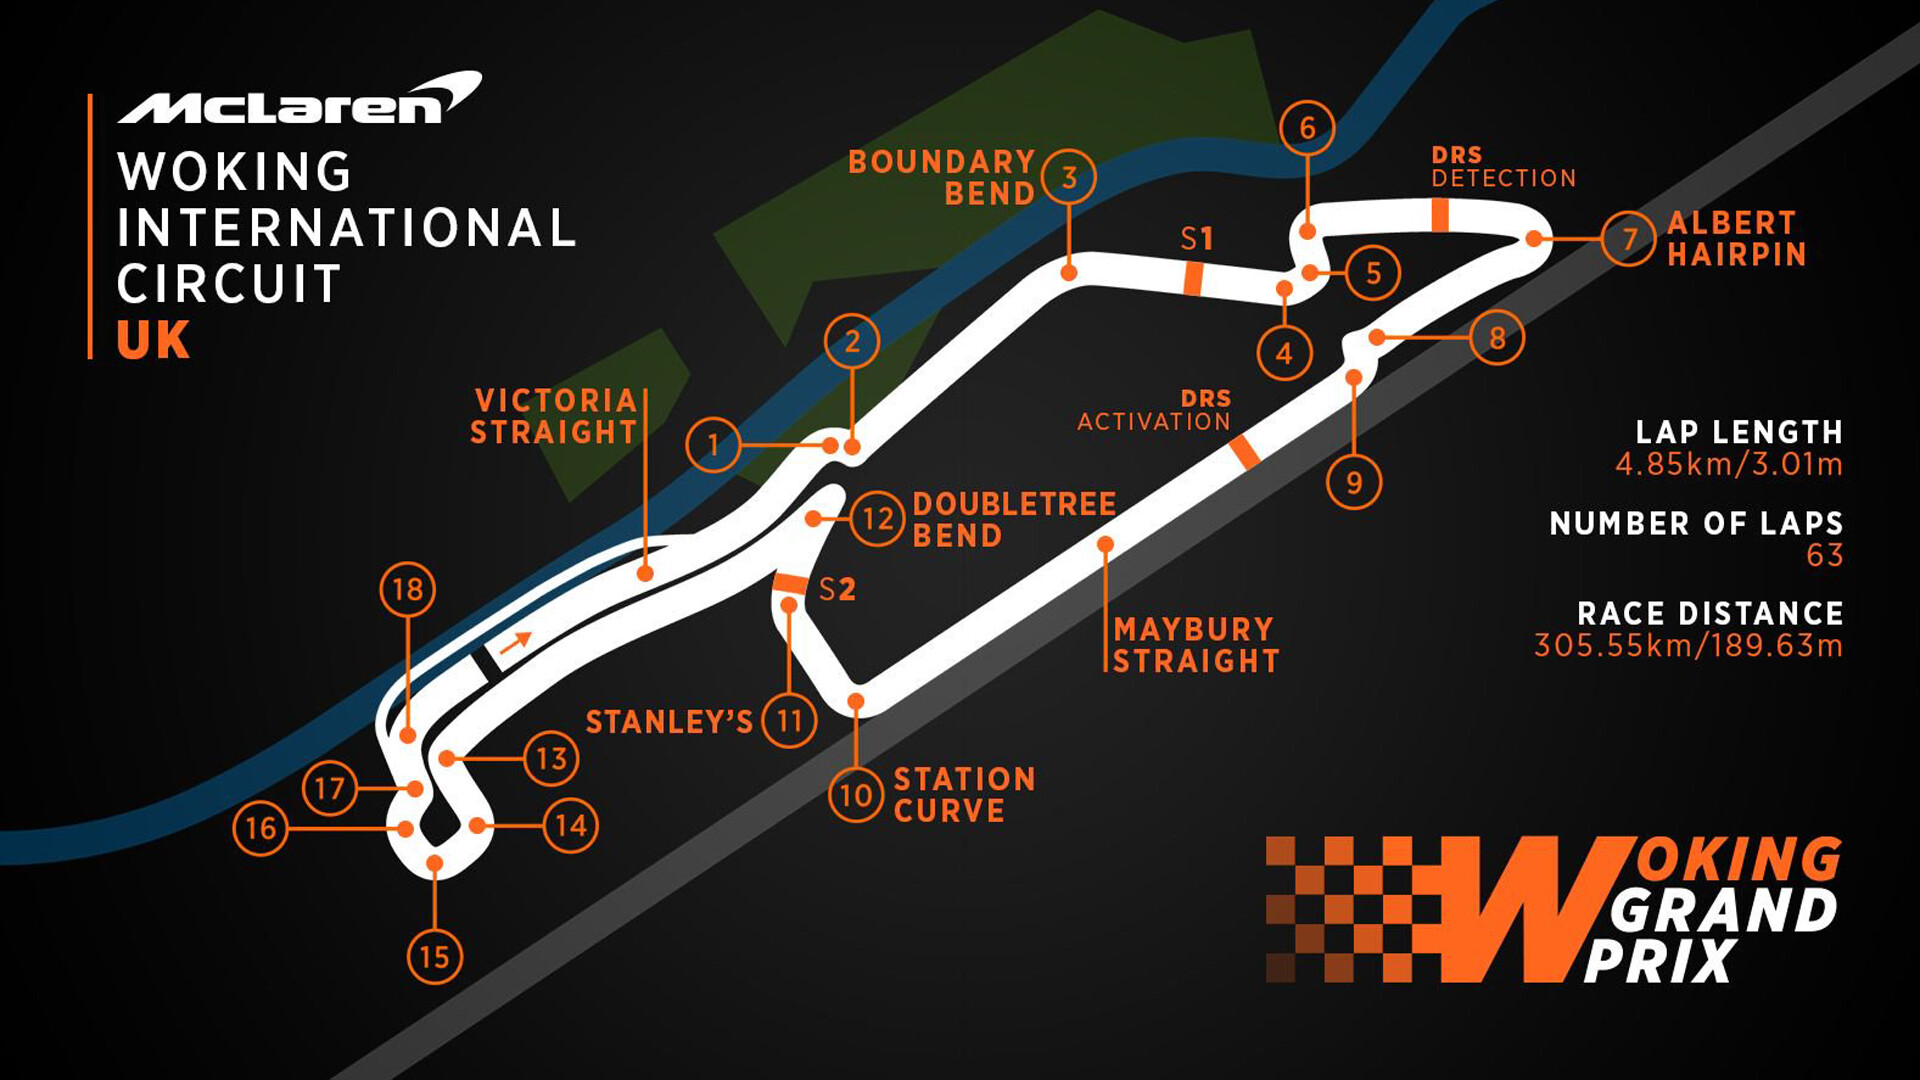 1920x1080-McLaren-Woking-International-Circuit